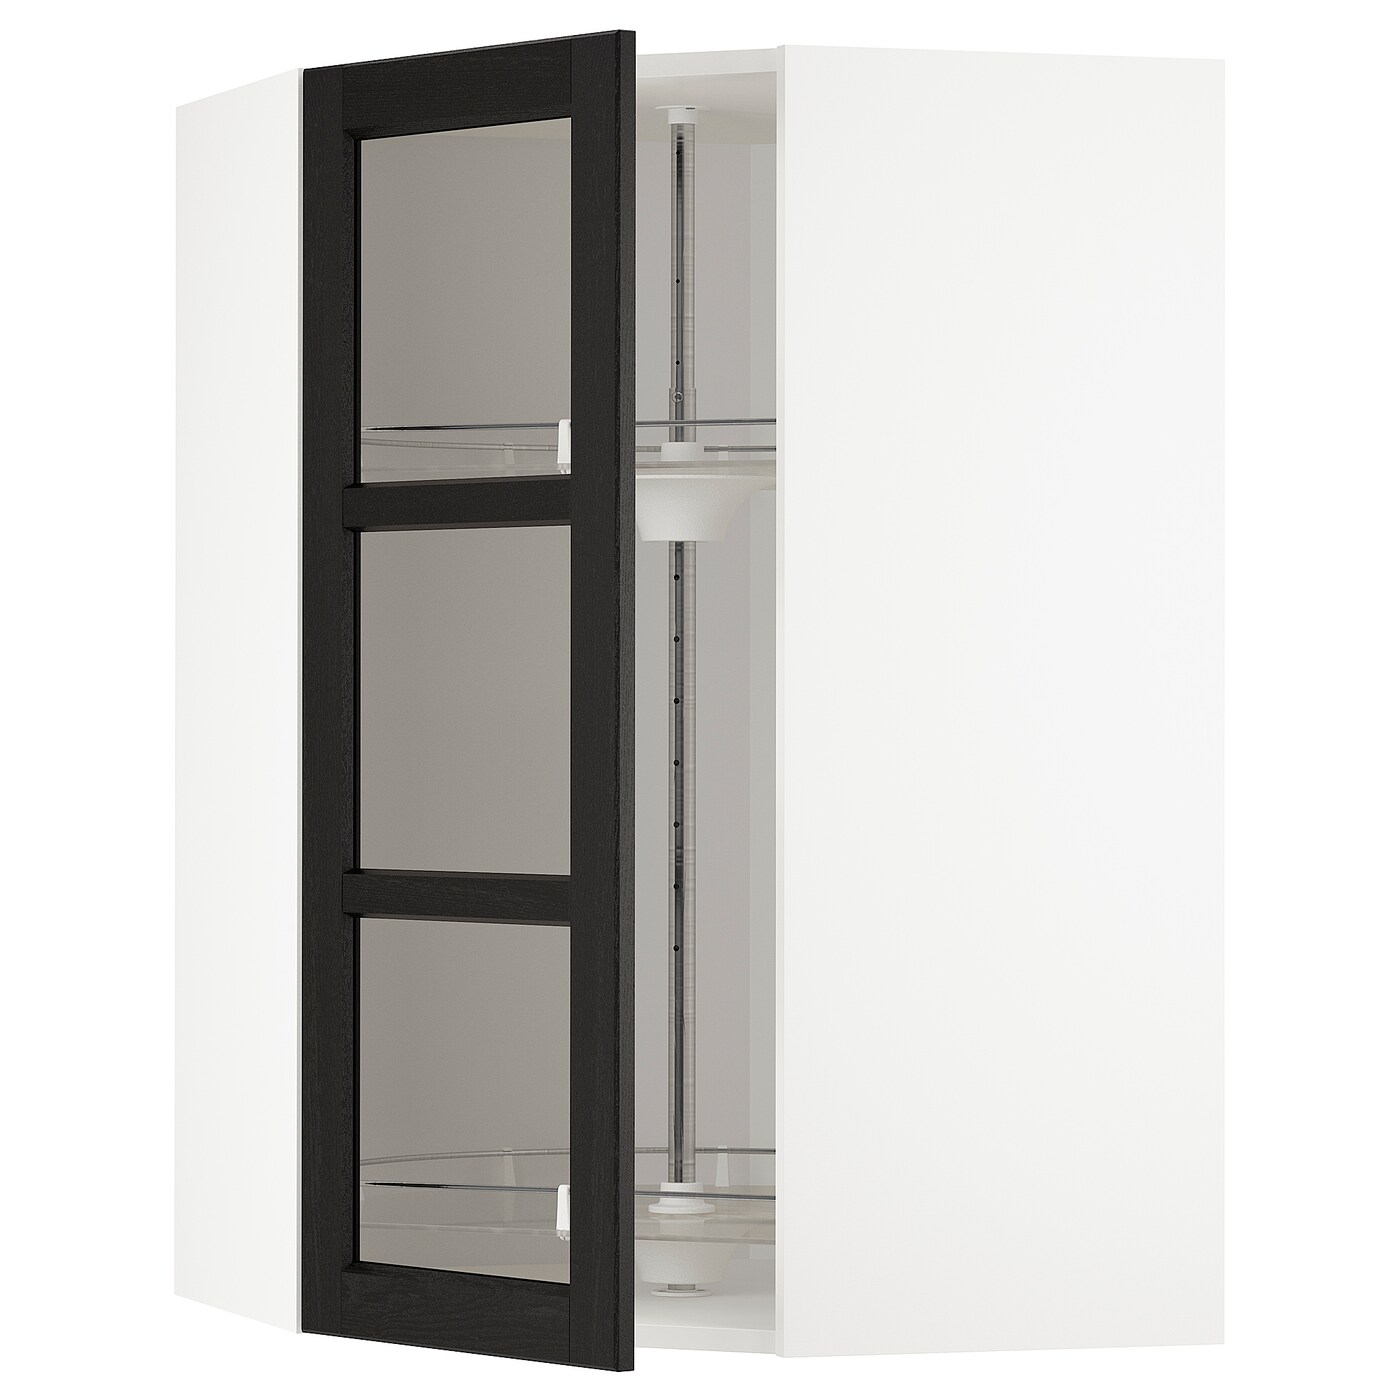 Навесной шкаф - IKEA METOD, 67.5х67.5х100 см, белый/черный/стекло, МЕТОД ИКЕА